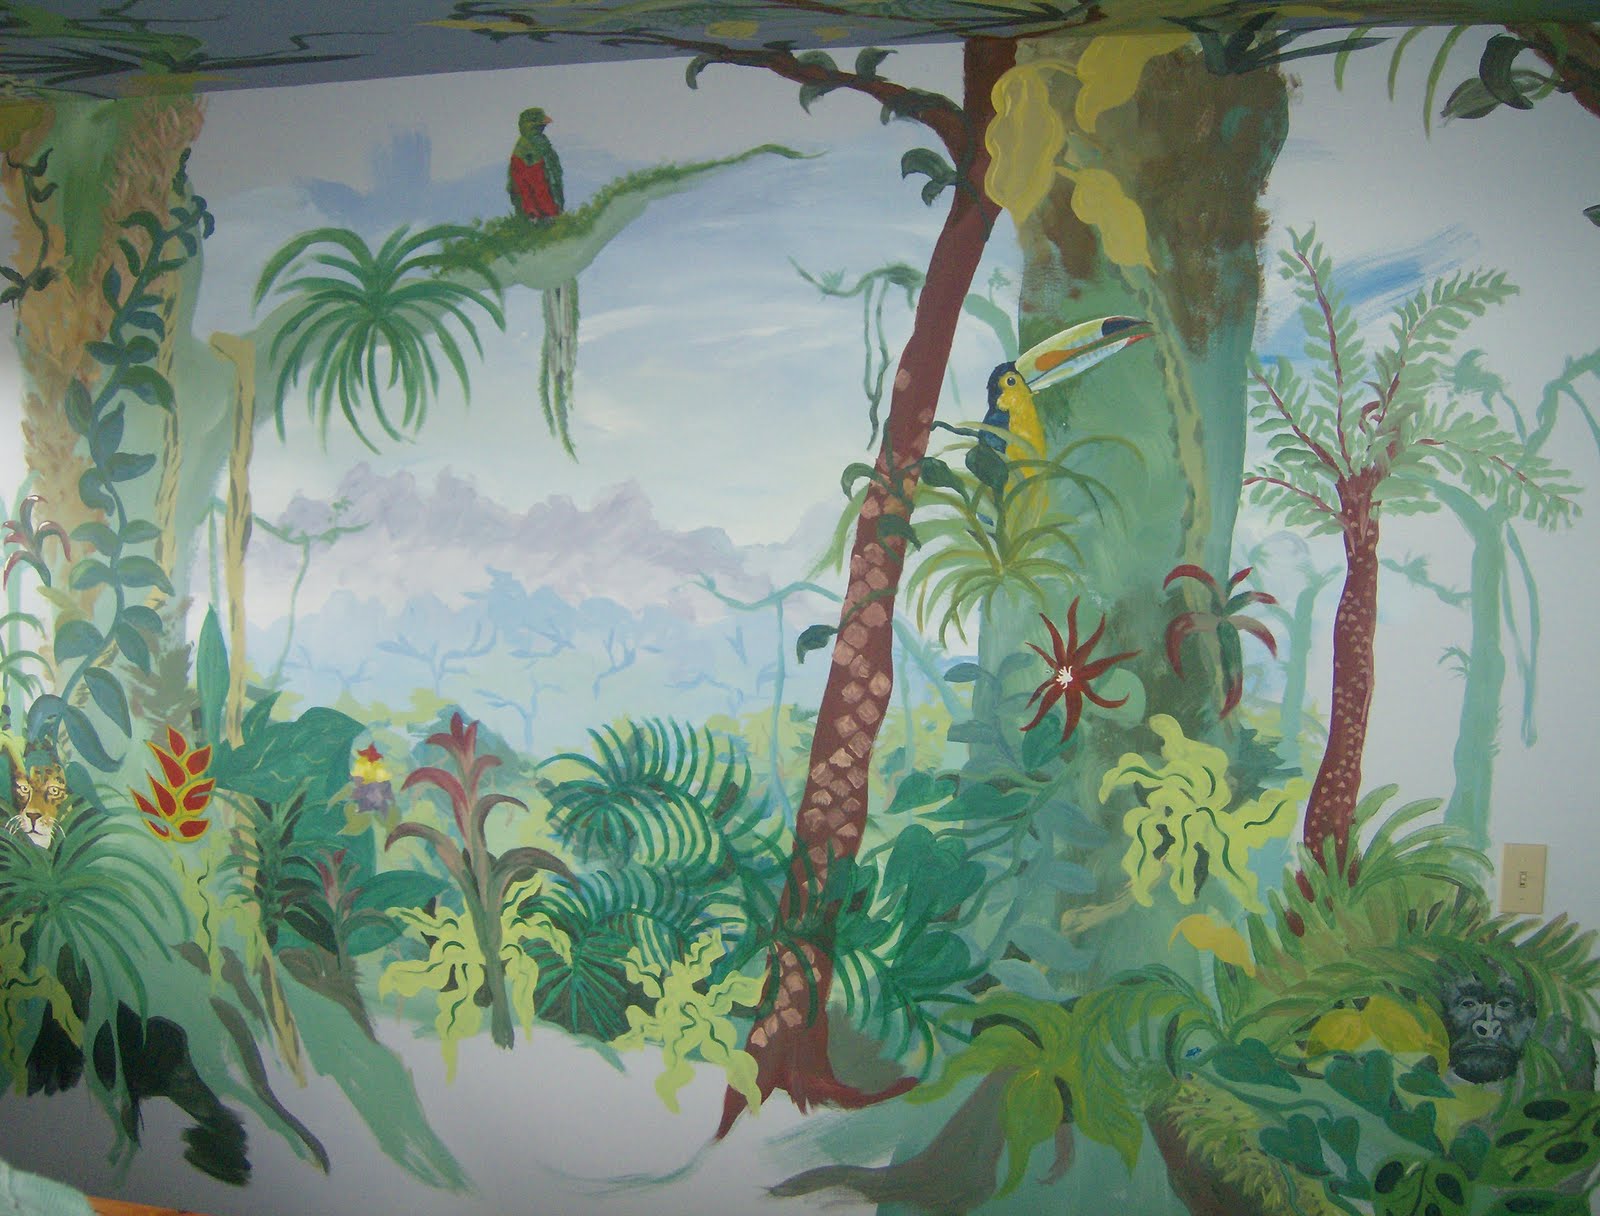 rainforest mural wallpaper - www.high-definition-wallpaper.com